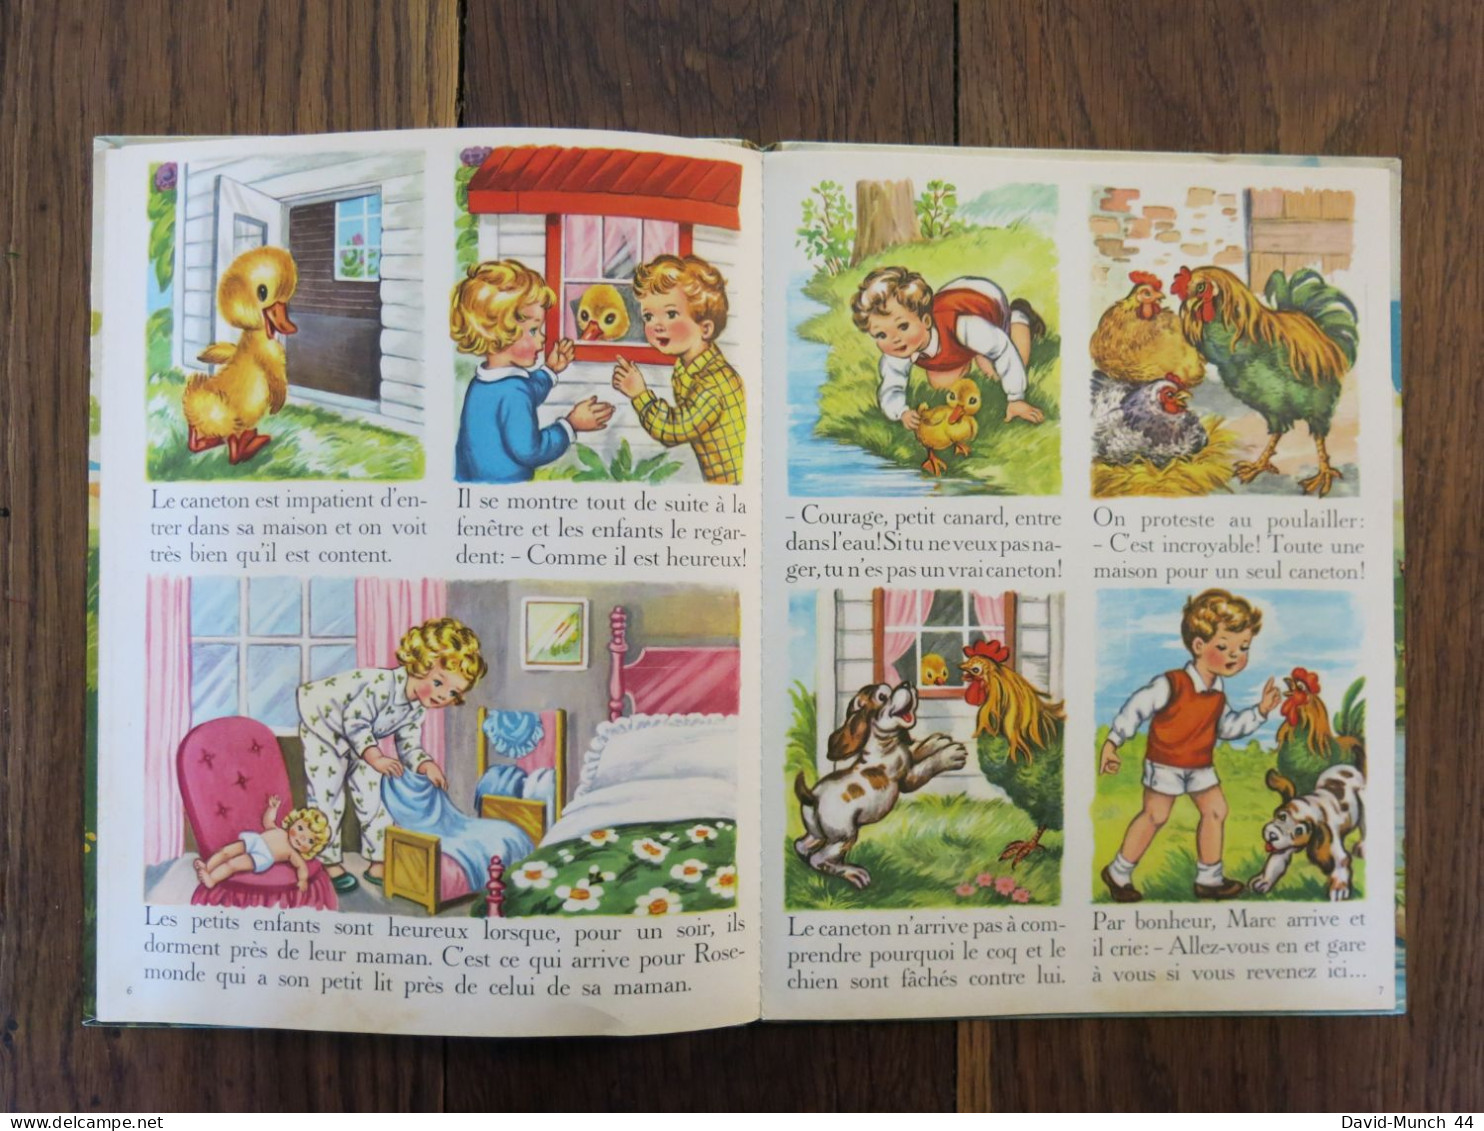 Courage, petit canard de Eva Montengon, illustrations de Mariapia. Editions Piccoli, Milan. 1961